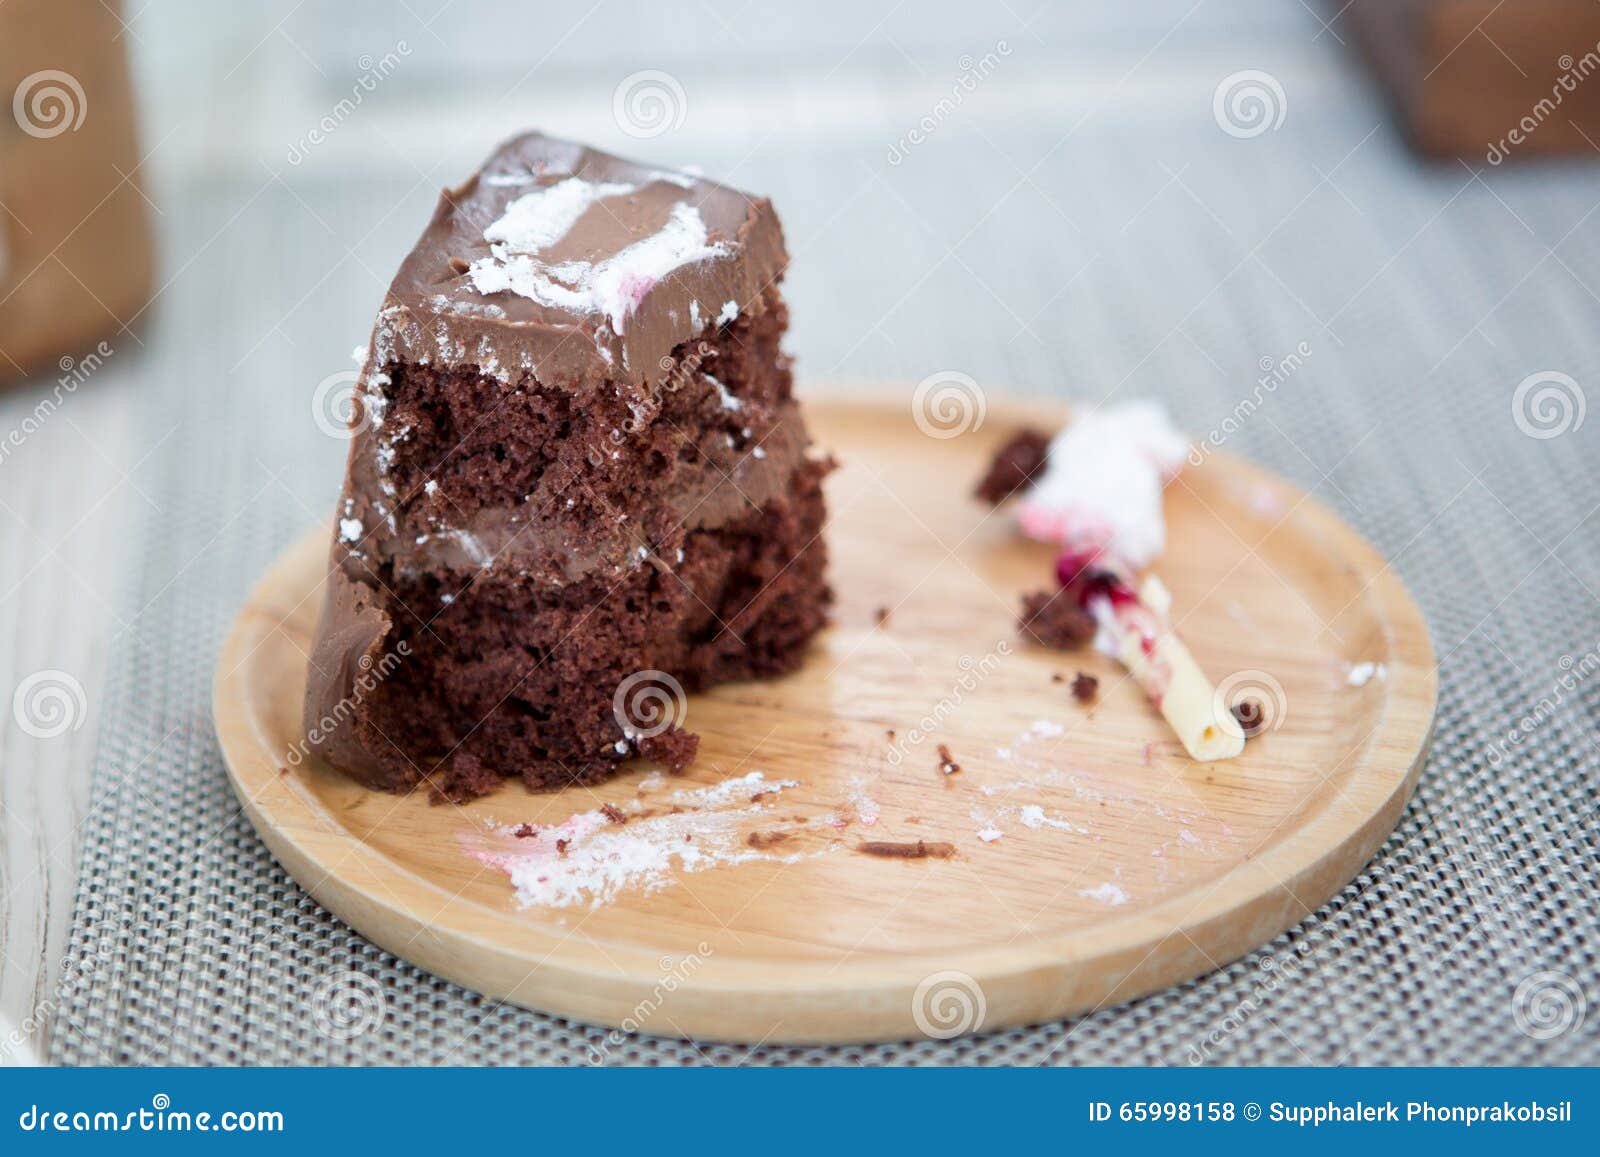 Chocolate Zucchini Cake | My Baking Addiction